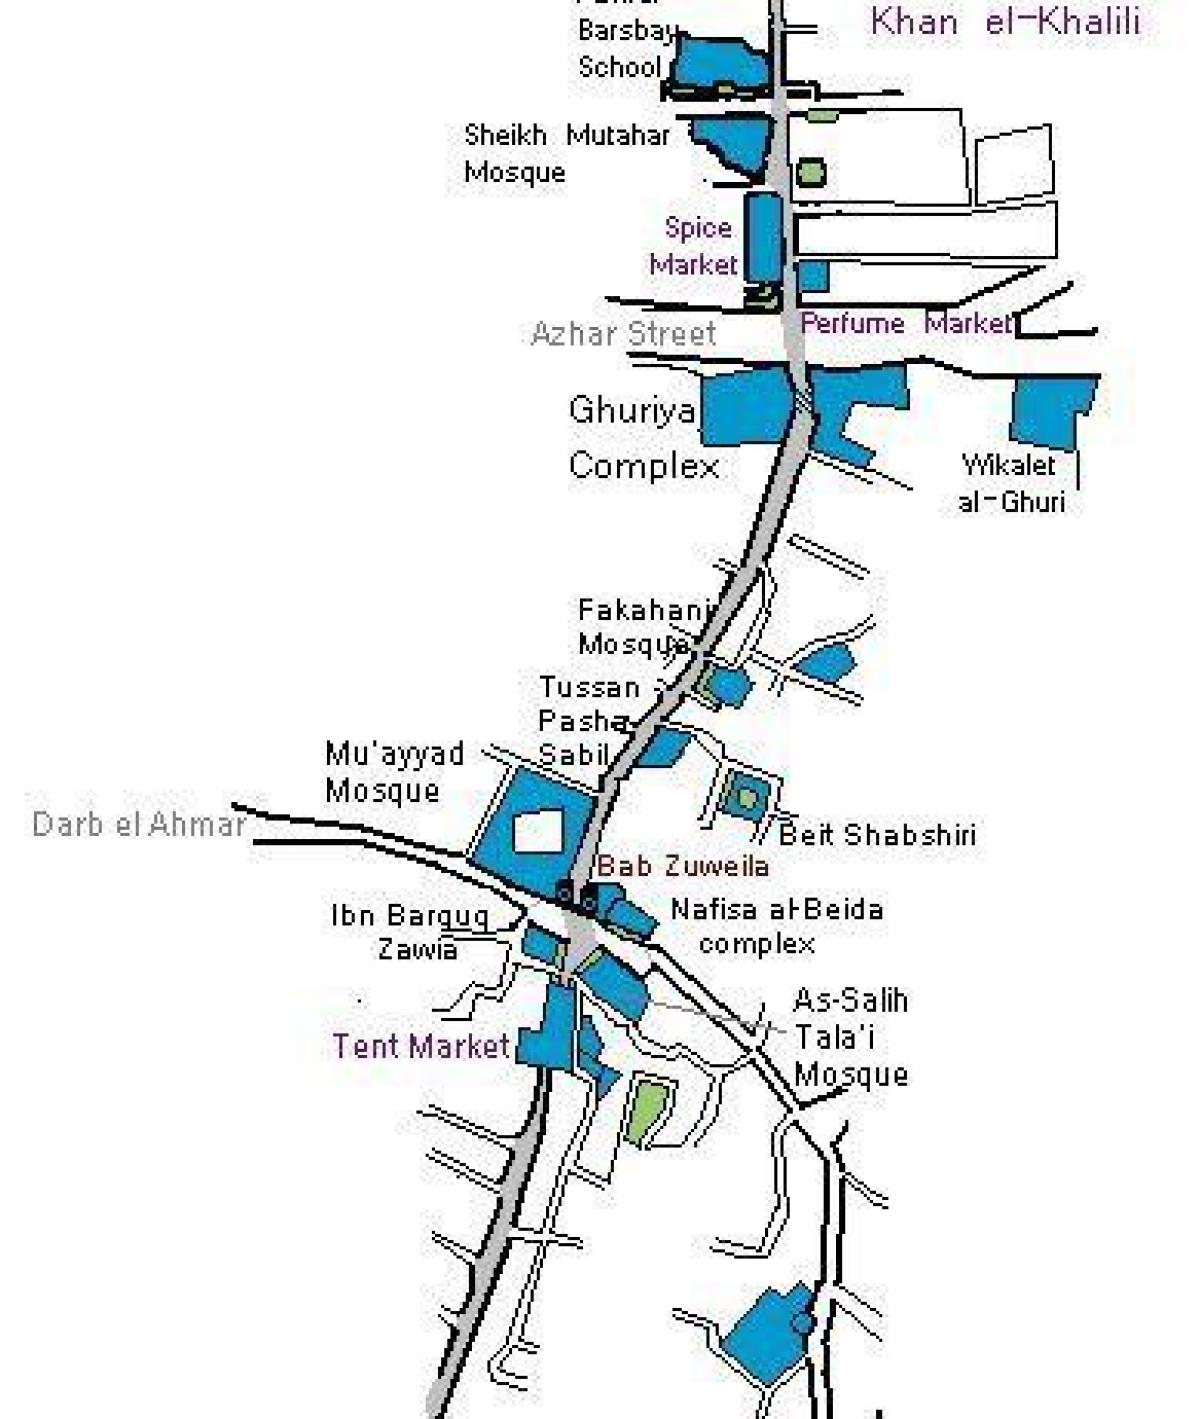 bazarul khan el khalili hartă